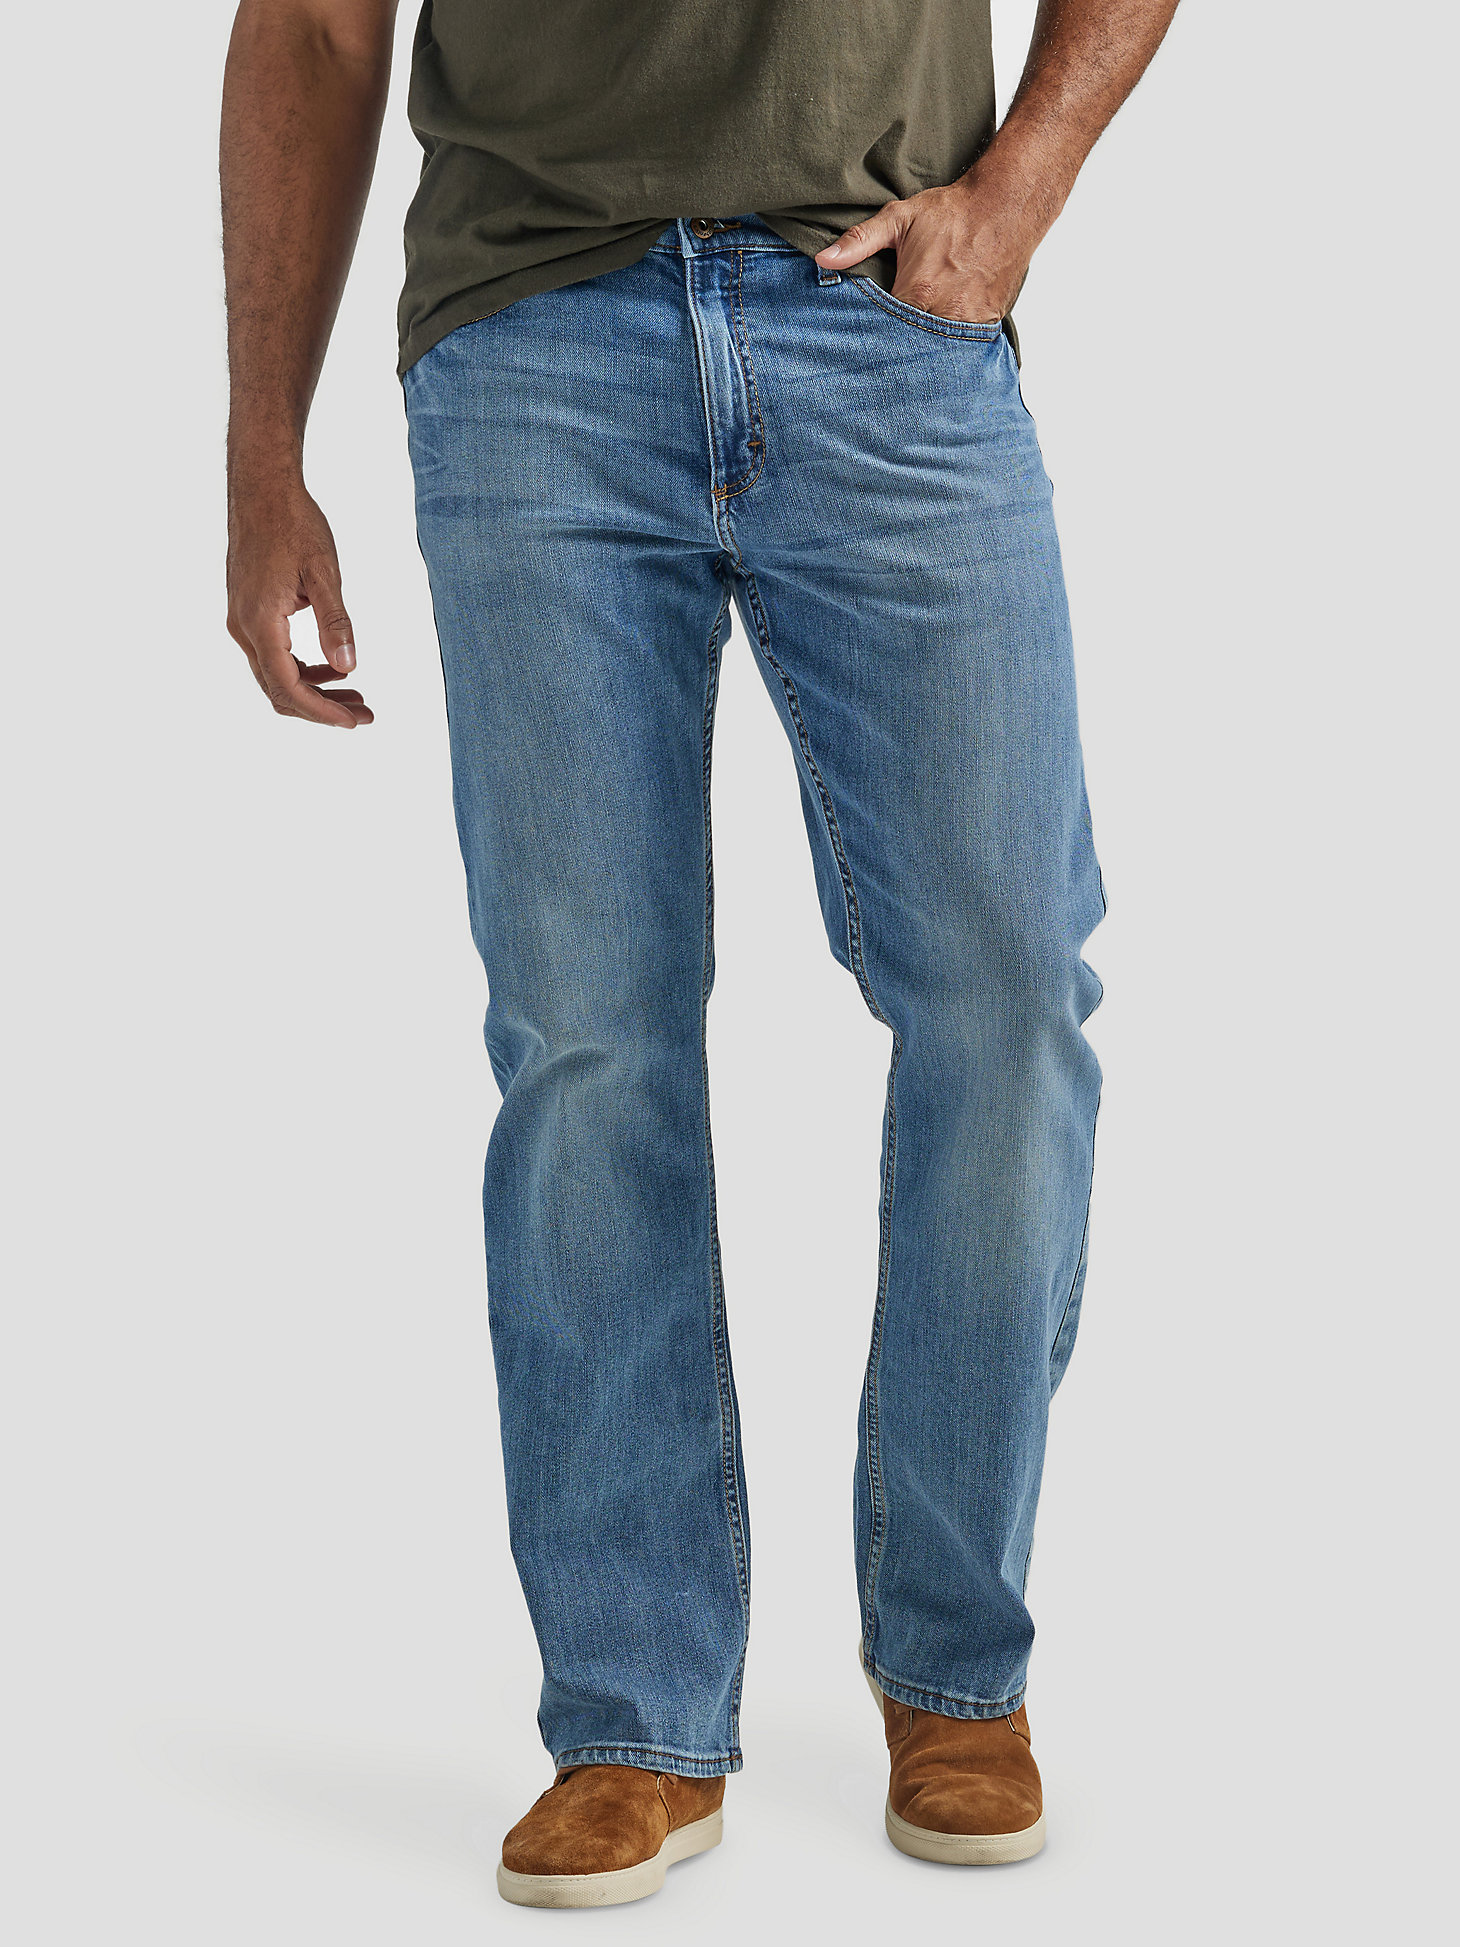 Arriba 92+ imagen wrangler men’s relaxed fit bootcut jeans